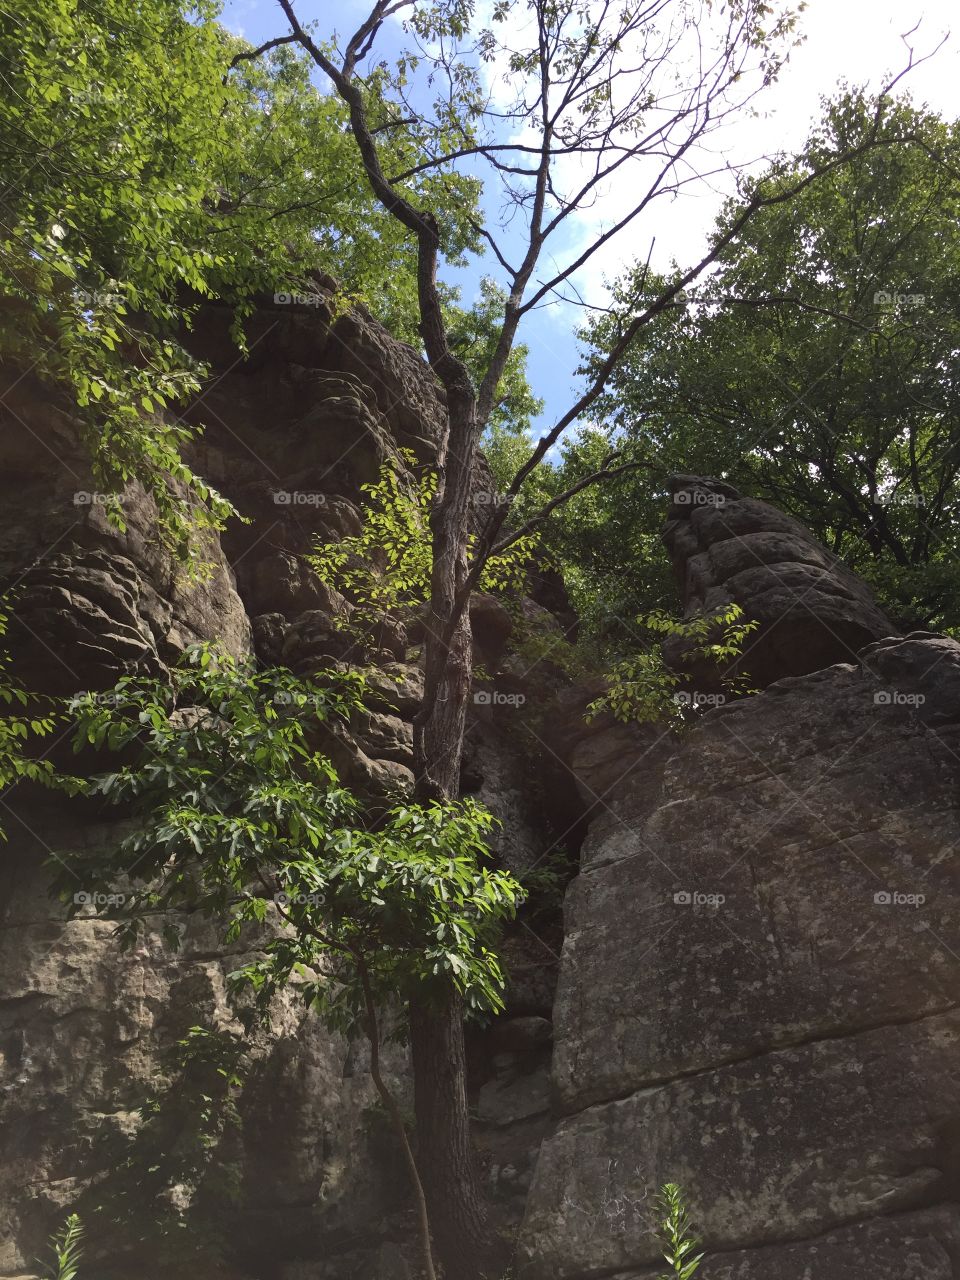 Pulpit Rocks in Smithfield, PA